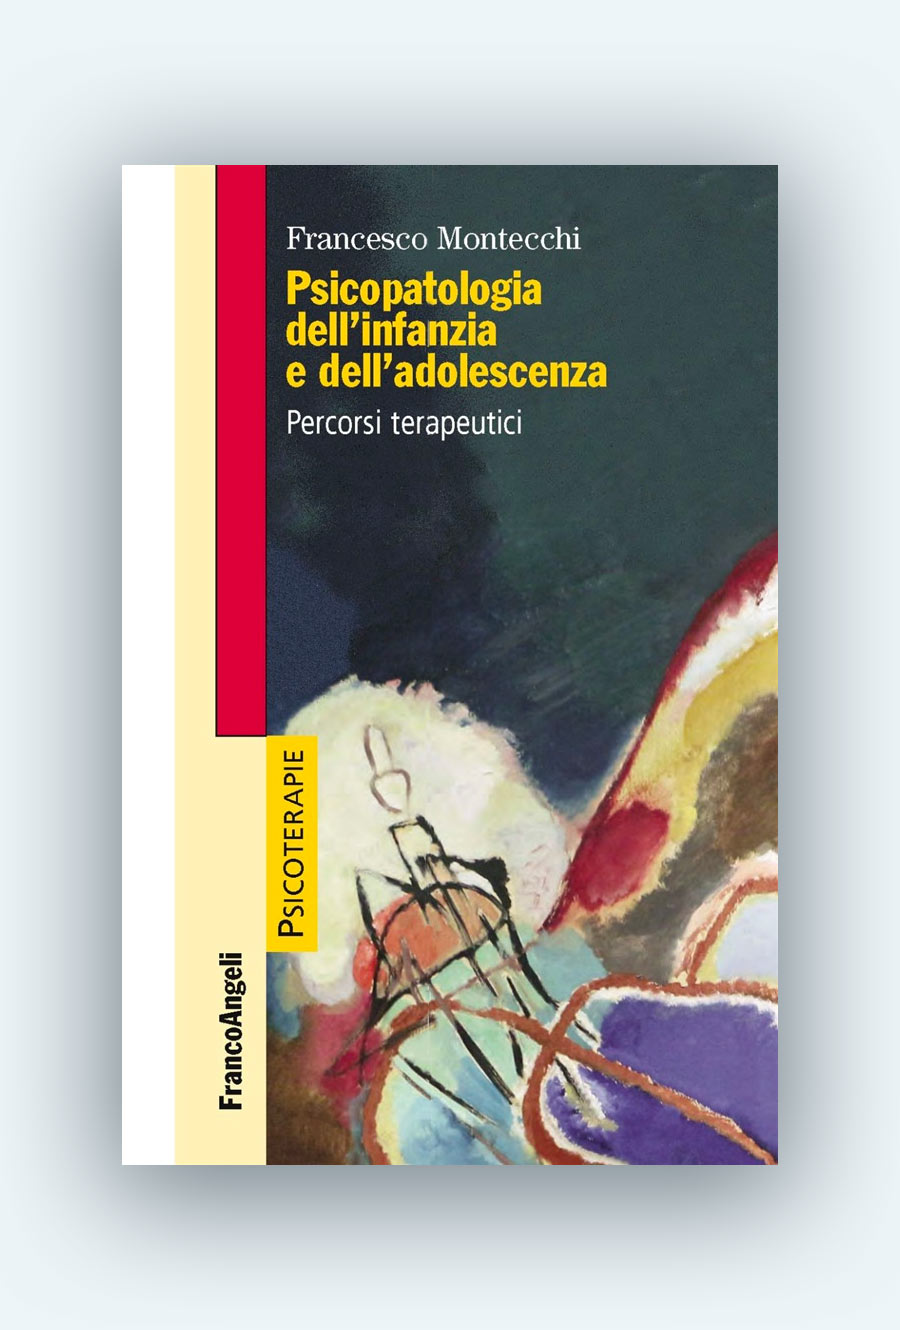 AISPT - Libro - Prof. Francesco Montecchi - Psicopatologia dell'infanzia e dell'adolescenza. Percorsi terapeutici.